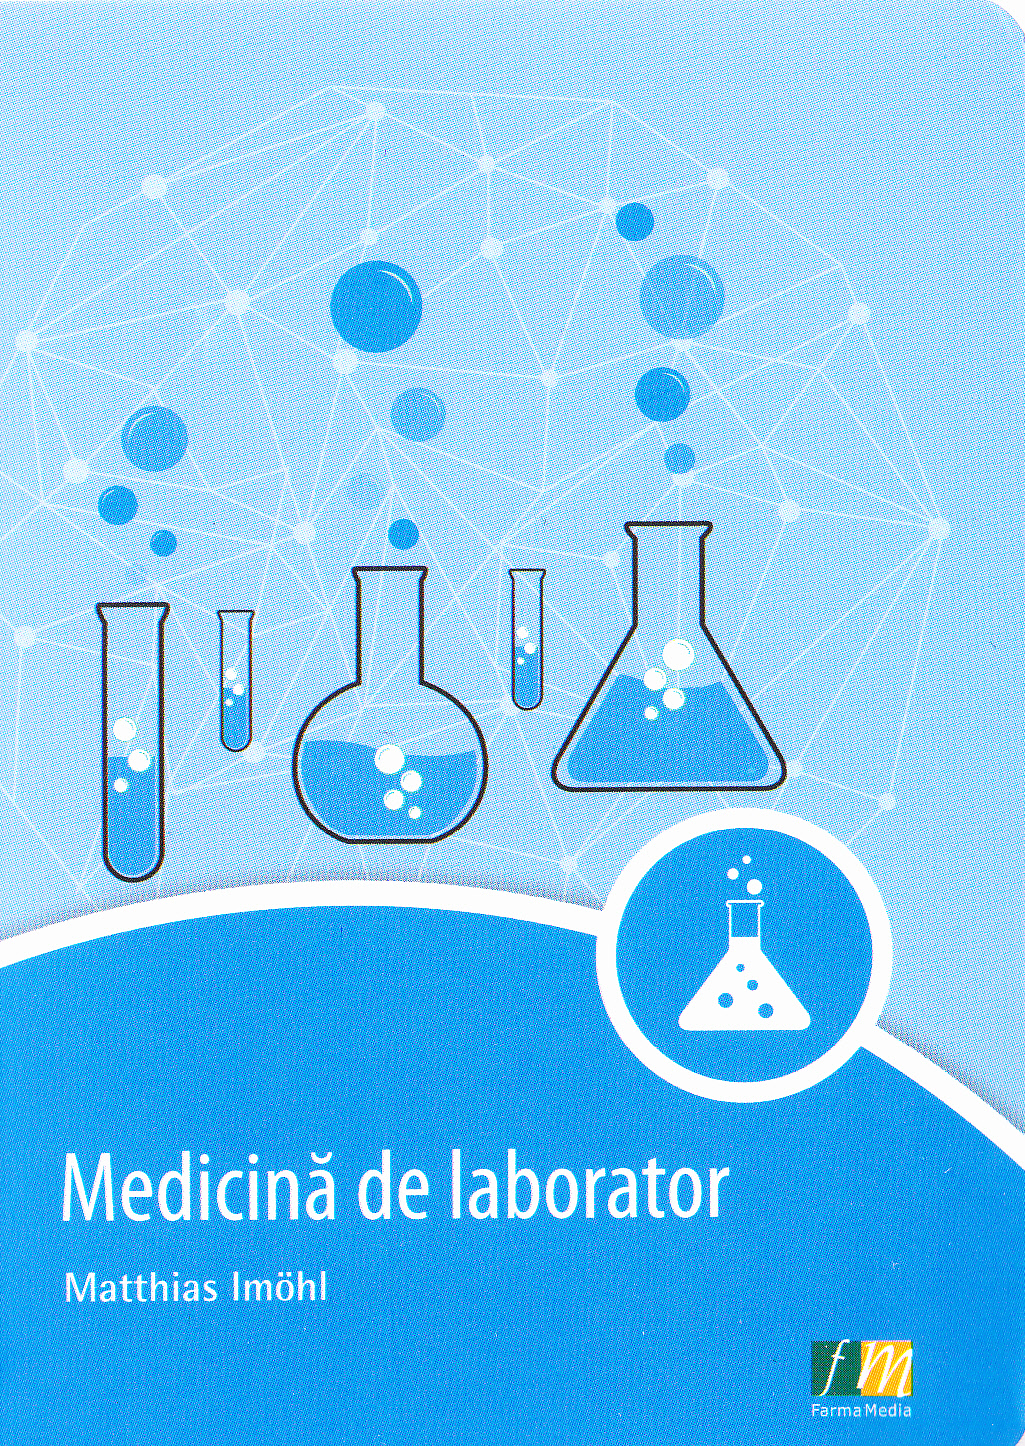 Medicina de laborator - Matthias Imohl